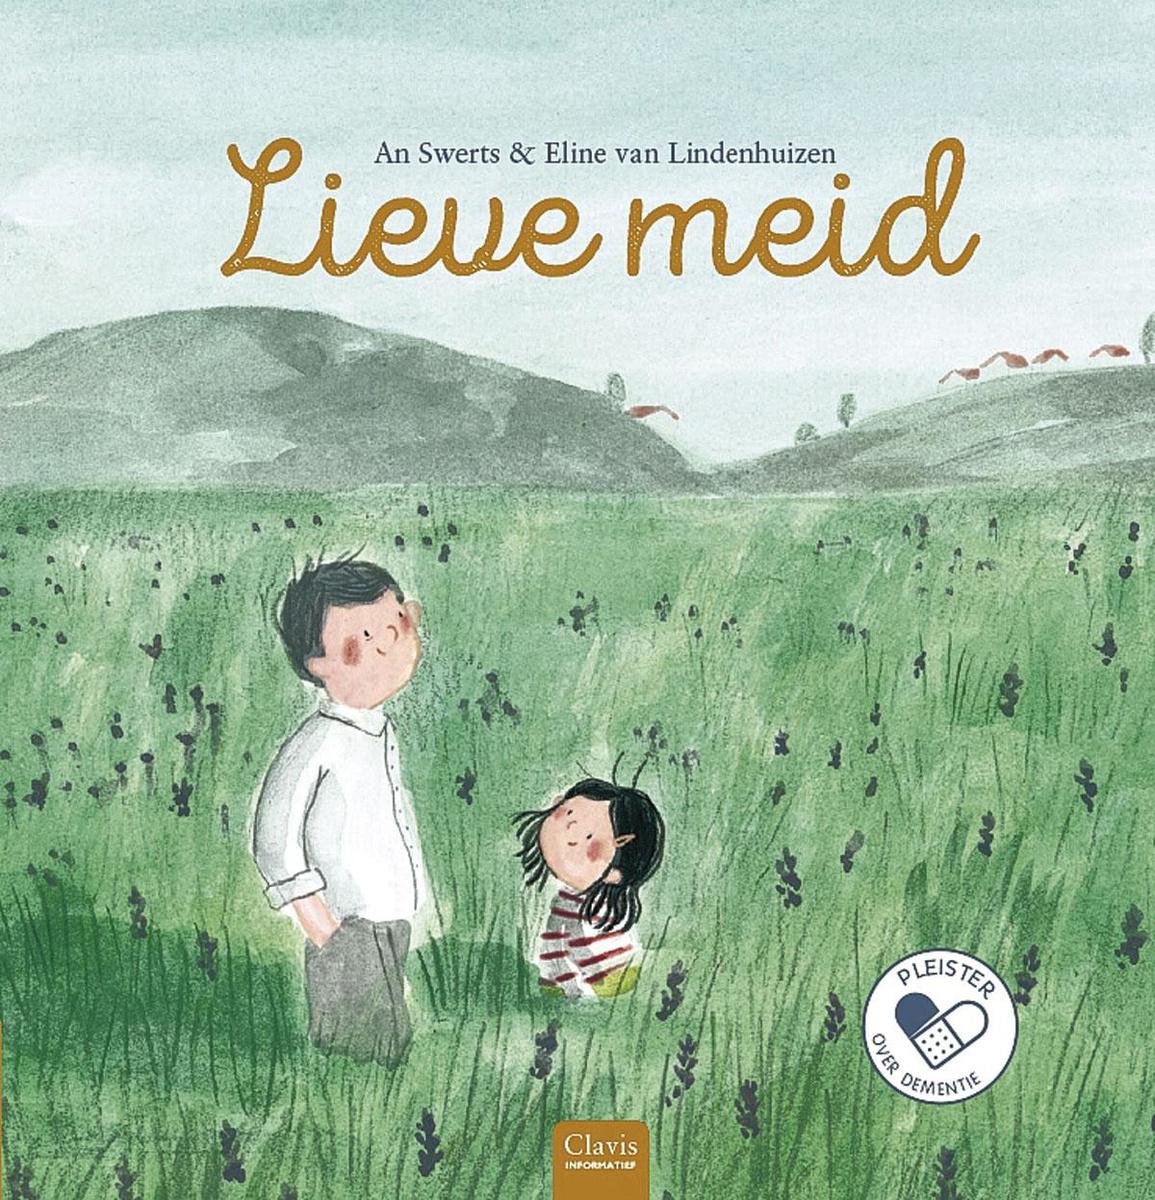 Lieve meid.  An Swerts (tekst) & Eline van Lindenhuizen (illustraties).  Clavis, 2020, 16,95 euro, ISBN 978 90 448 3849 7. Voor kinderen vanaf 6 jaar.